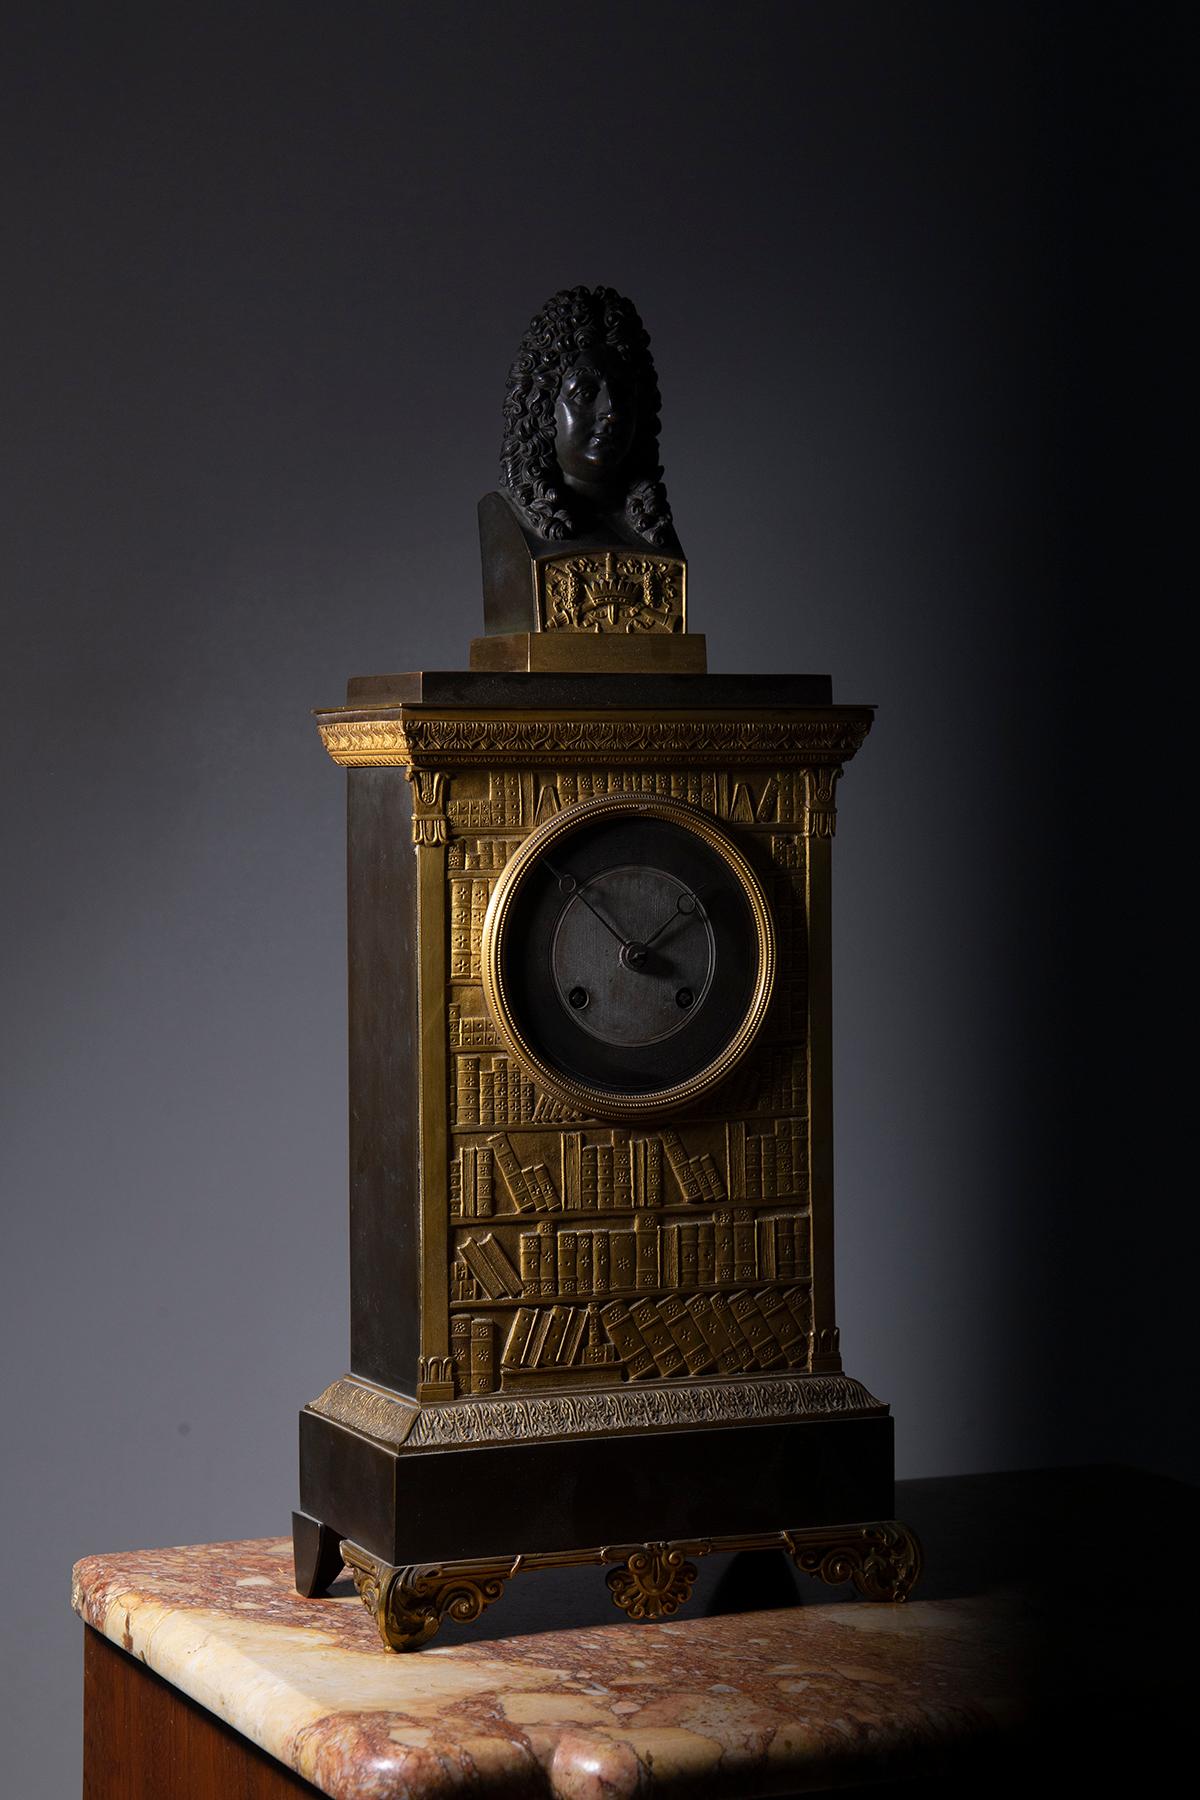 Stellen Sie sich eine Zeitreise in das opulente 19. Jahrhundert vor, wo eine prächtige französische Uhr aus vergoldeter Bronze im Mittelpunkt steht, eine atemberaubende Hommage an den Sonnenkönig Ludwig XIV. Dieser Zeitmesser ist ein wahrer Schatz,